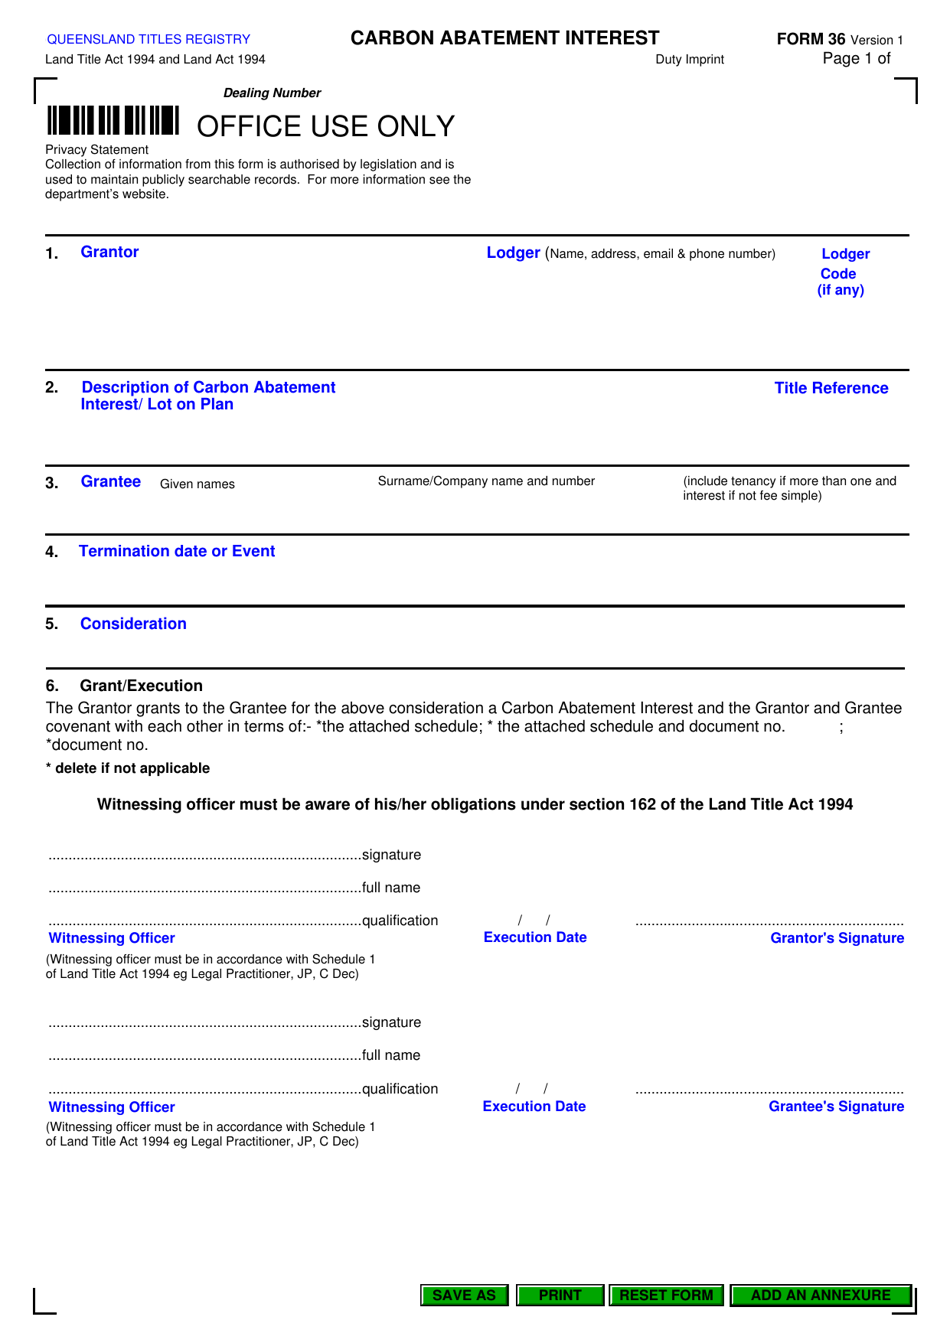 Form 36 Carbon Abatement Interest - Queensland, Australia, Page 1